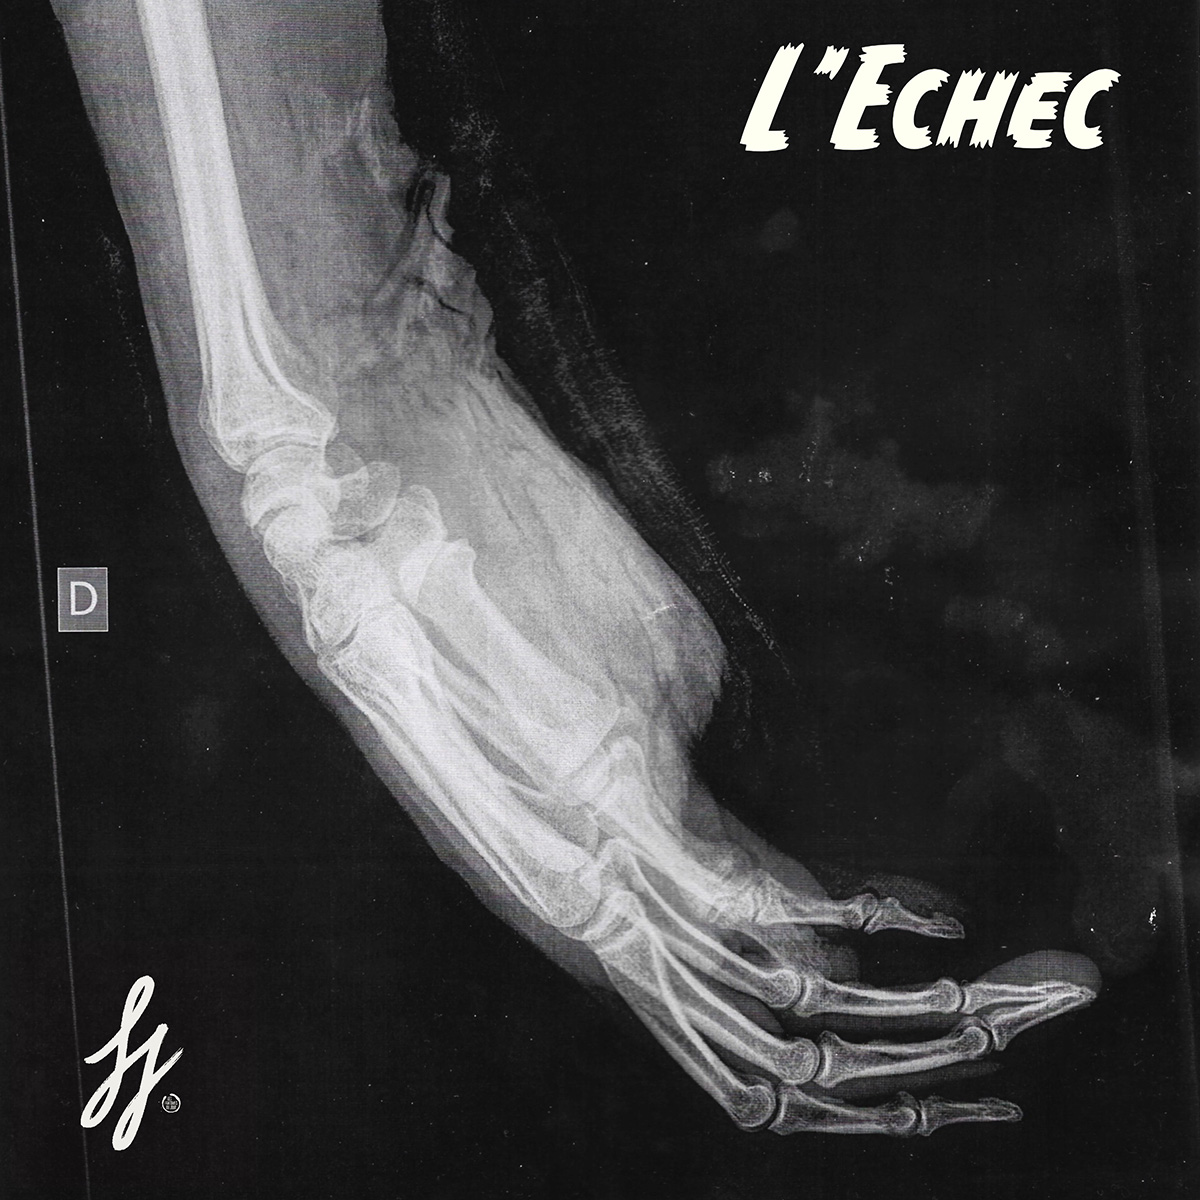 Les Fantômes du Jour “L’Échec” single artwork